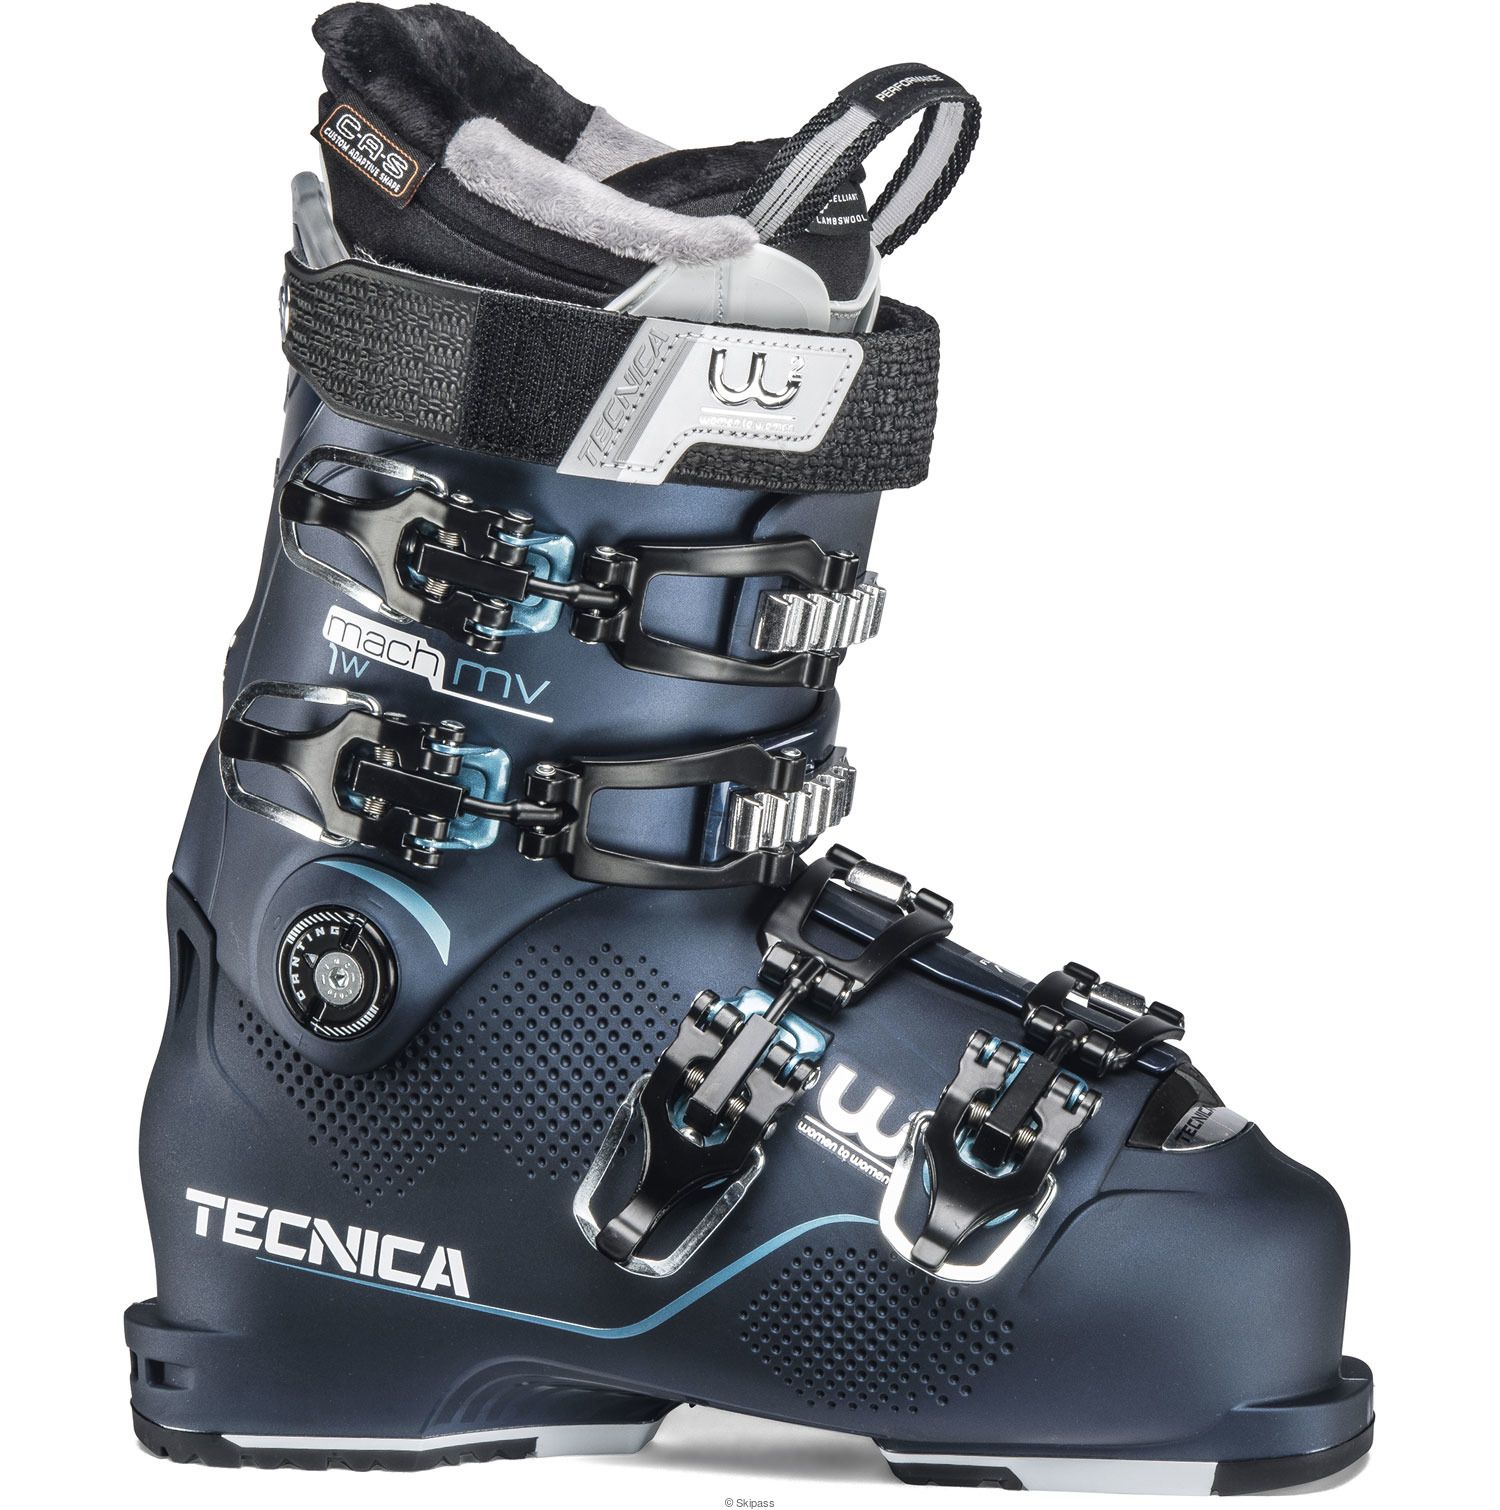 Chaussures de ski MACH1 MV 105 W 2020